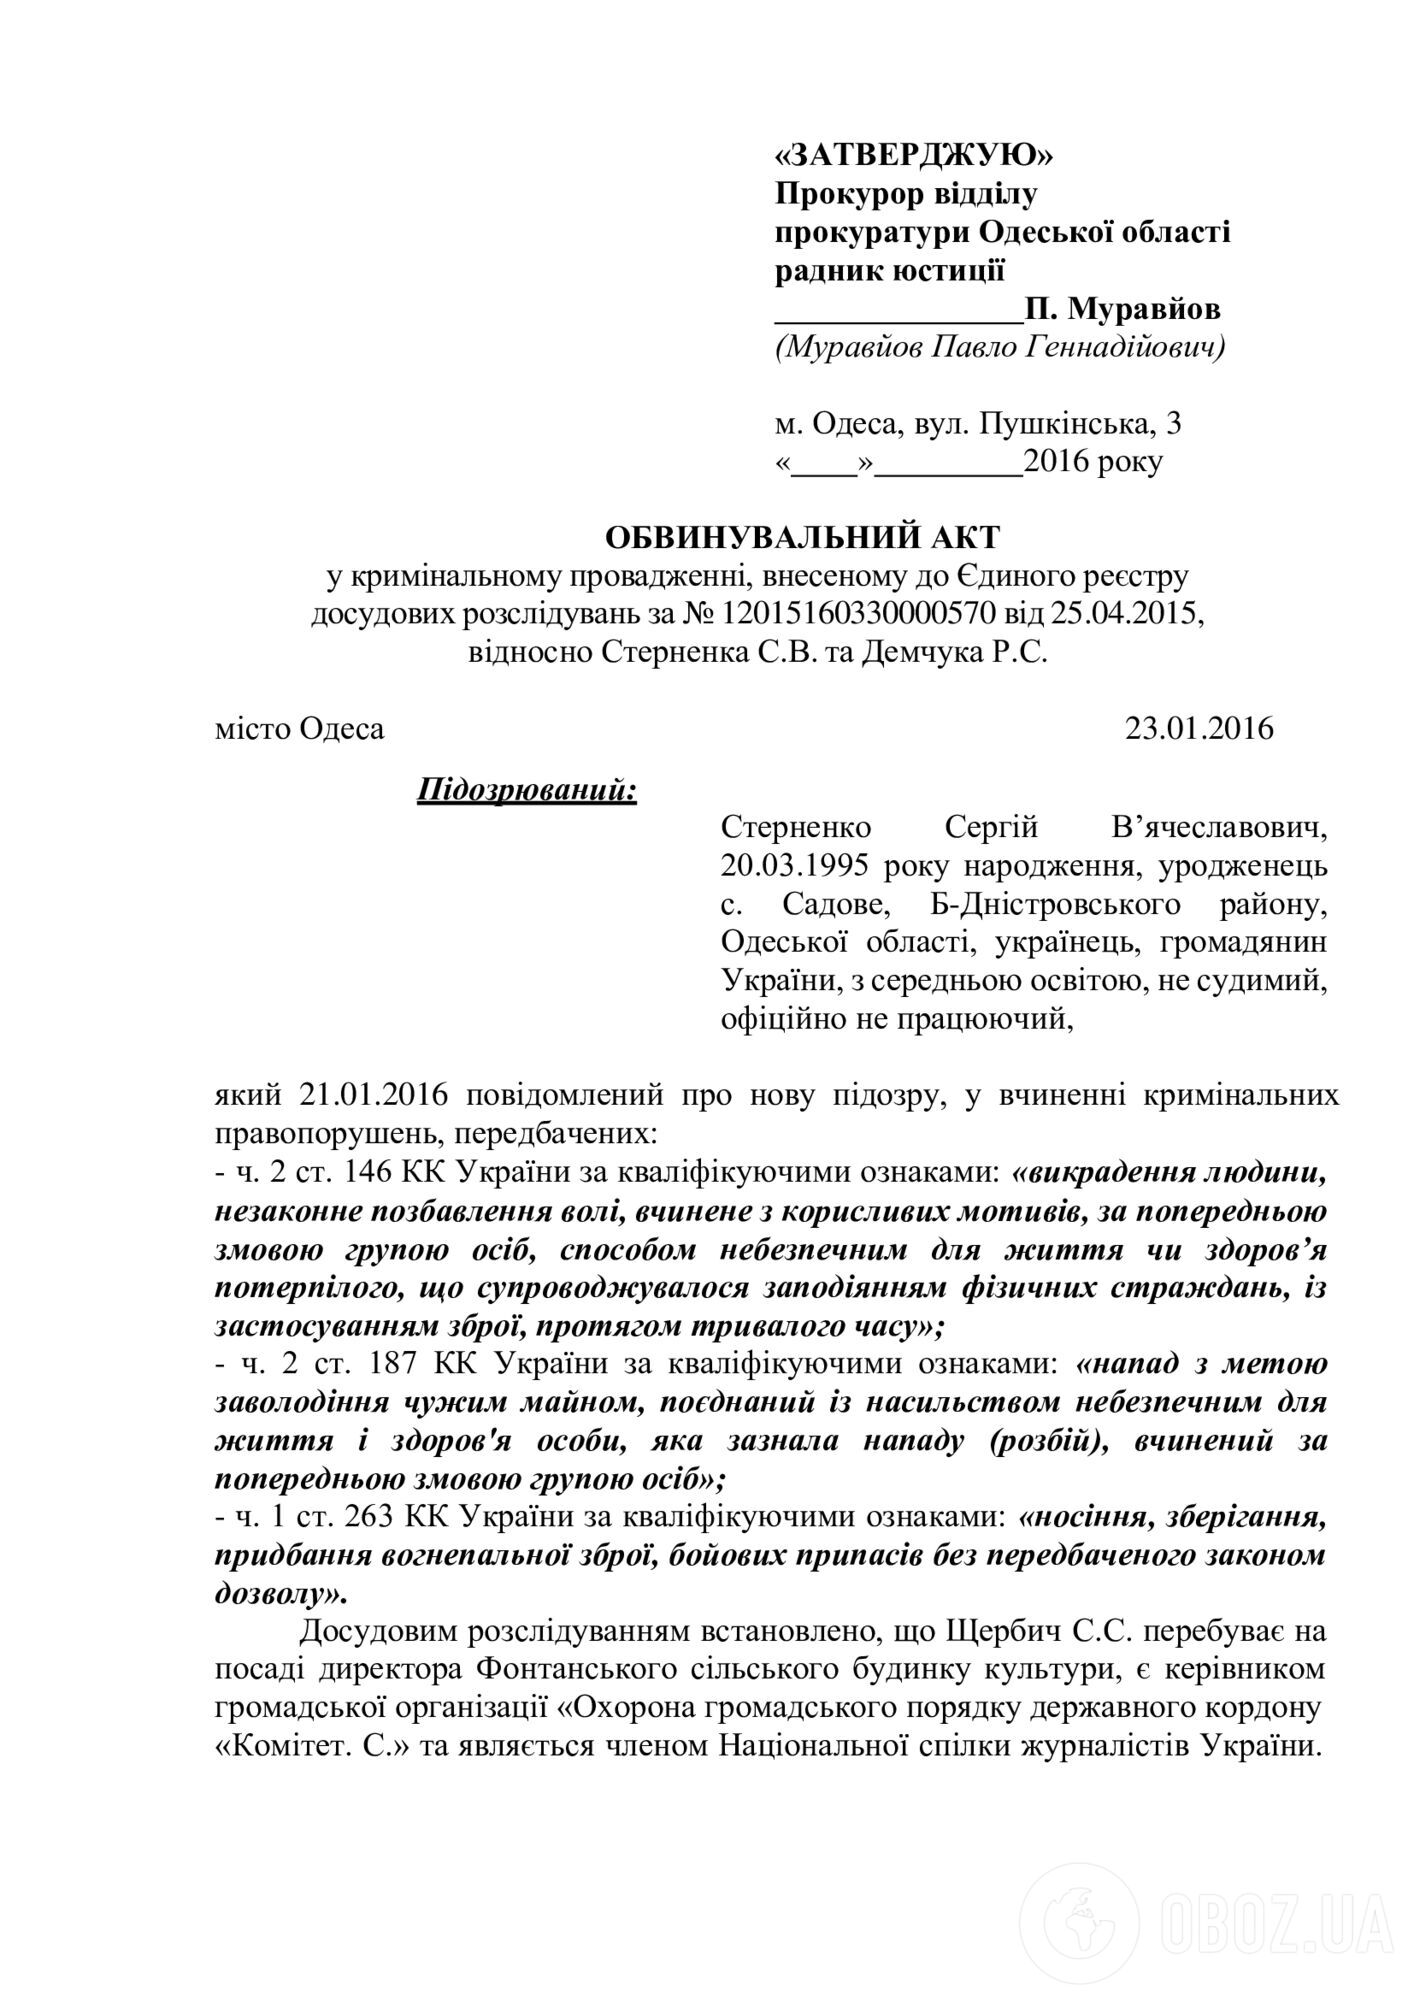 Обвинительный акт в деле Стерненко